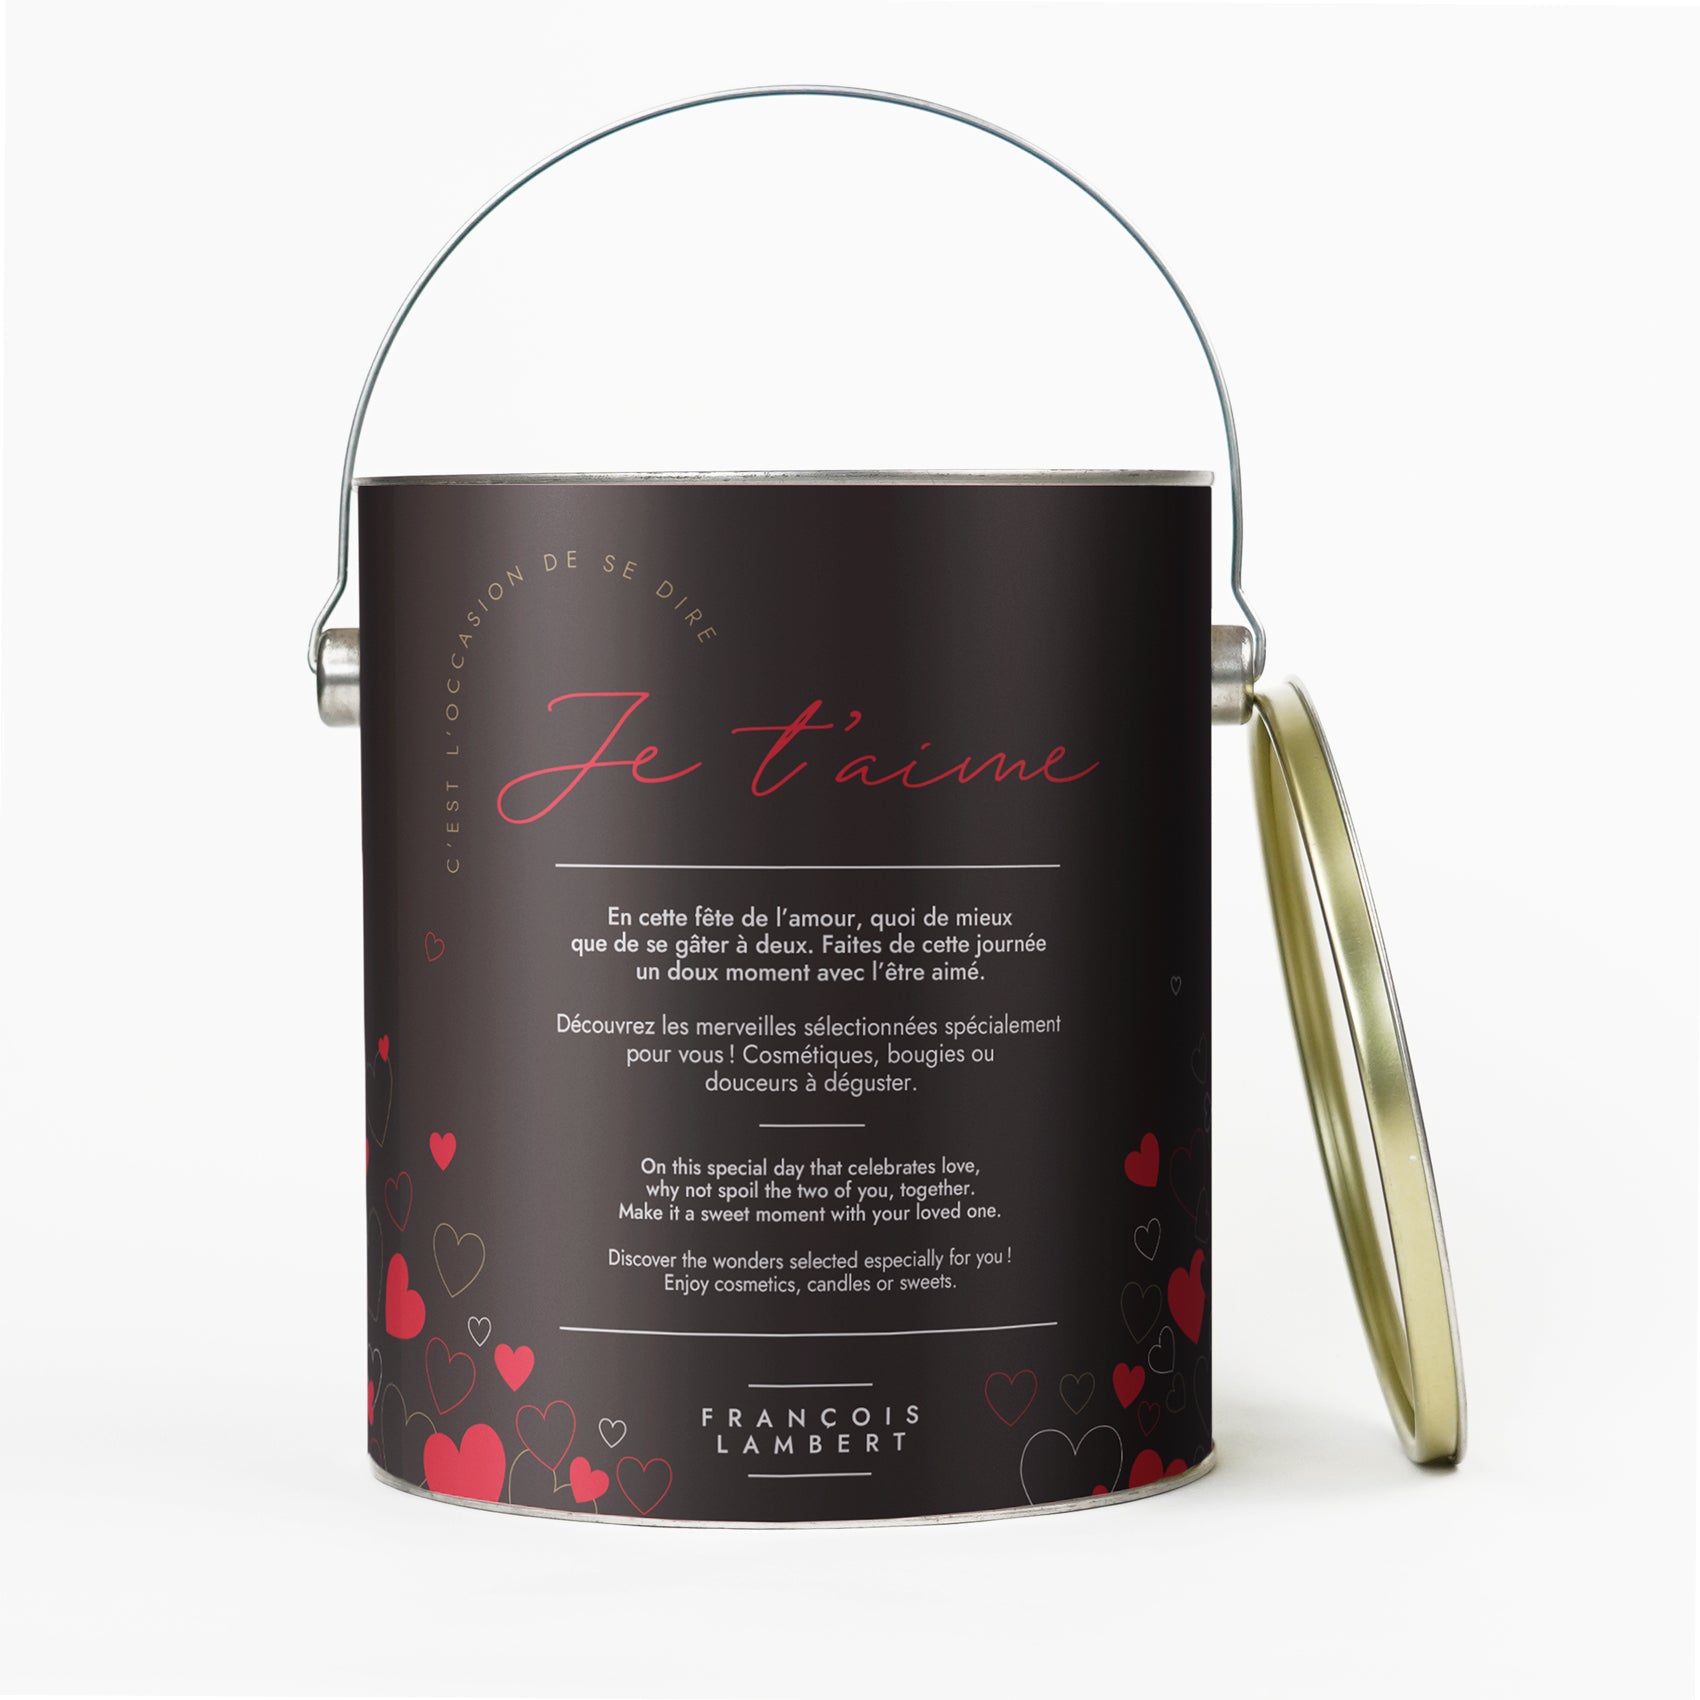 Coffret cadeau cylindrique pour la Saint-Valentin avec l'inscription "Je t'aime" en lettres rouges, entouré de cœurs et un texte bilingue français-anglais. Poignée métallique sur le dessus et marque "FRANÇOIS LAMBERT" en bas.